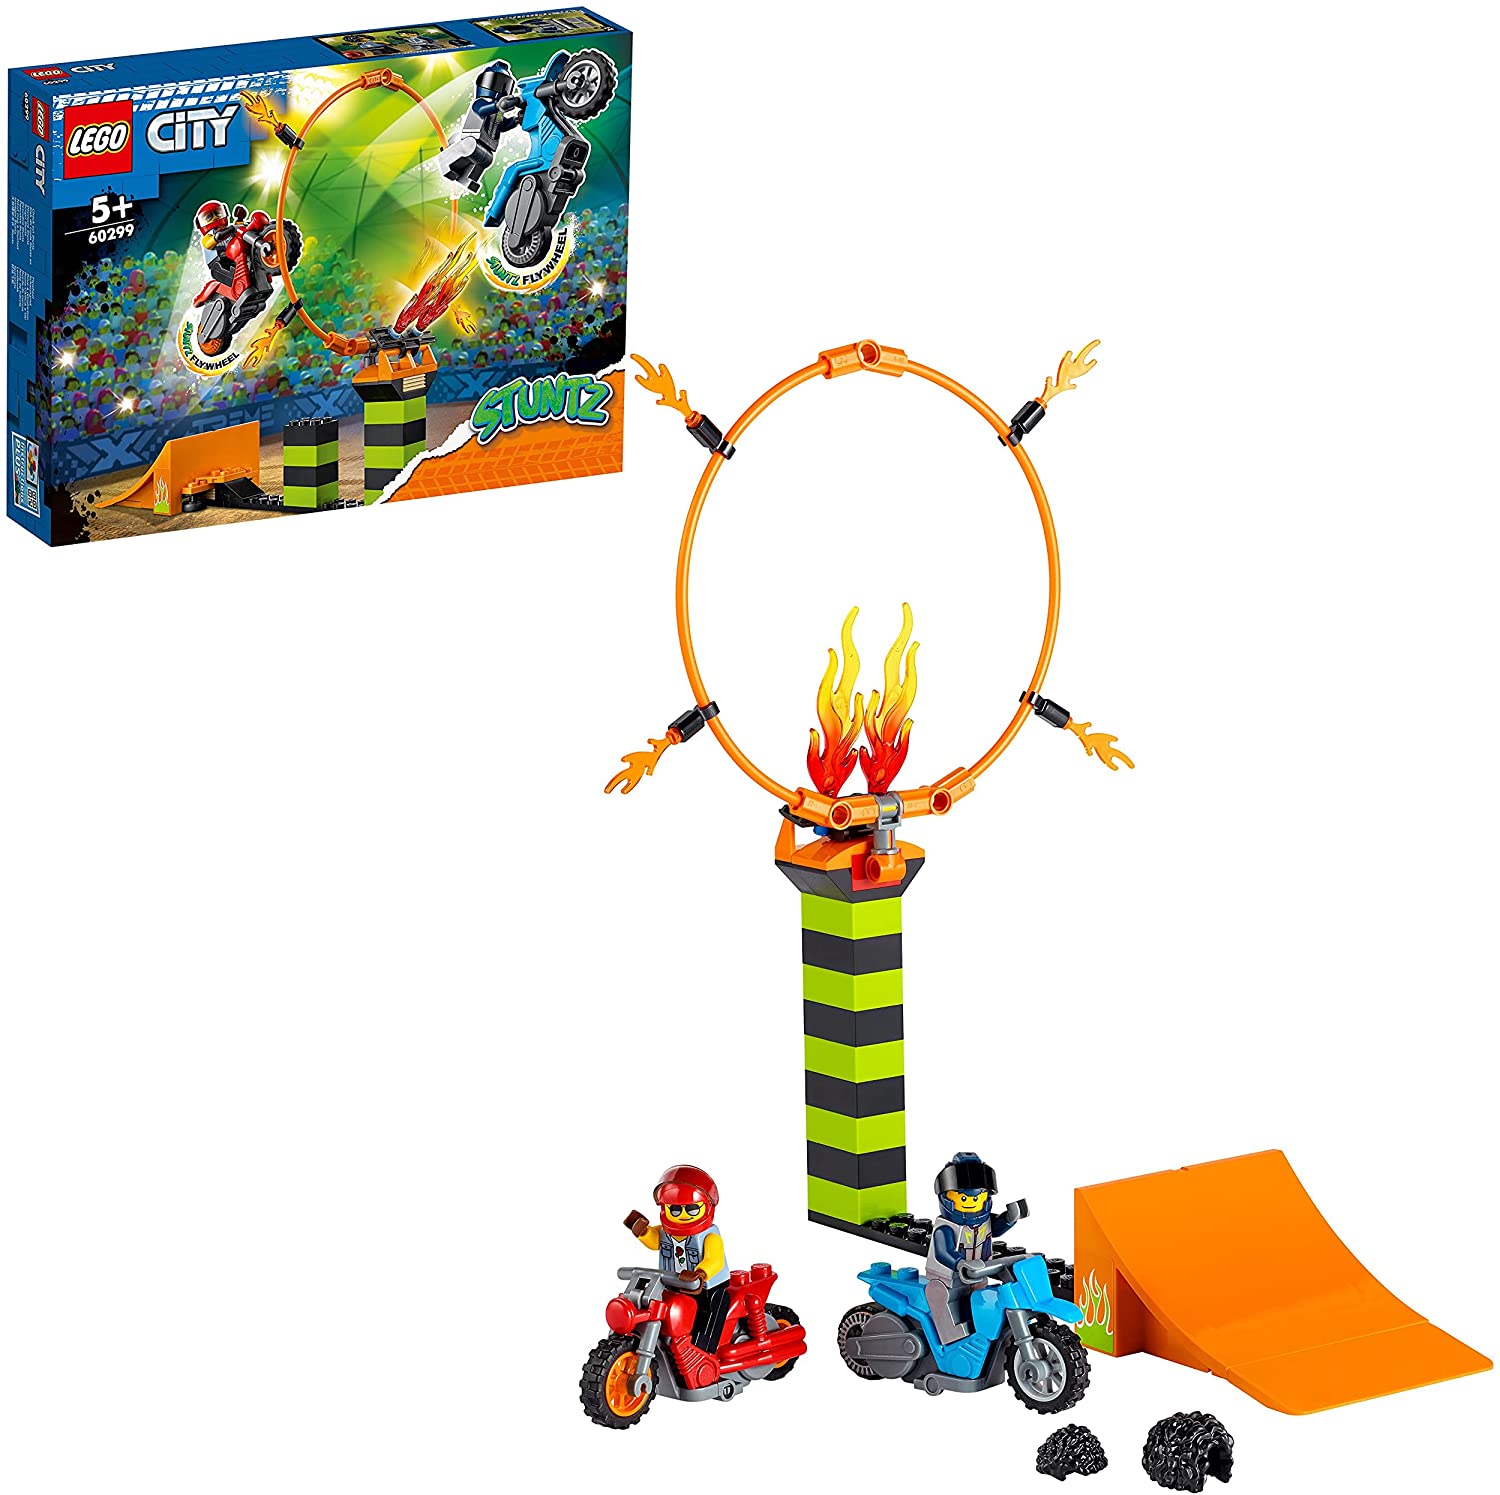 LEGO 60299 City Stuntz Stunt Competition Set of 2 Flywheel Operated Toy Mot